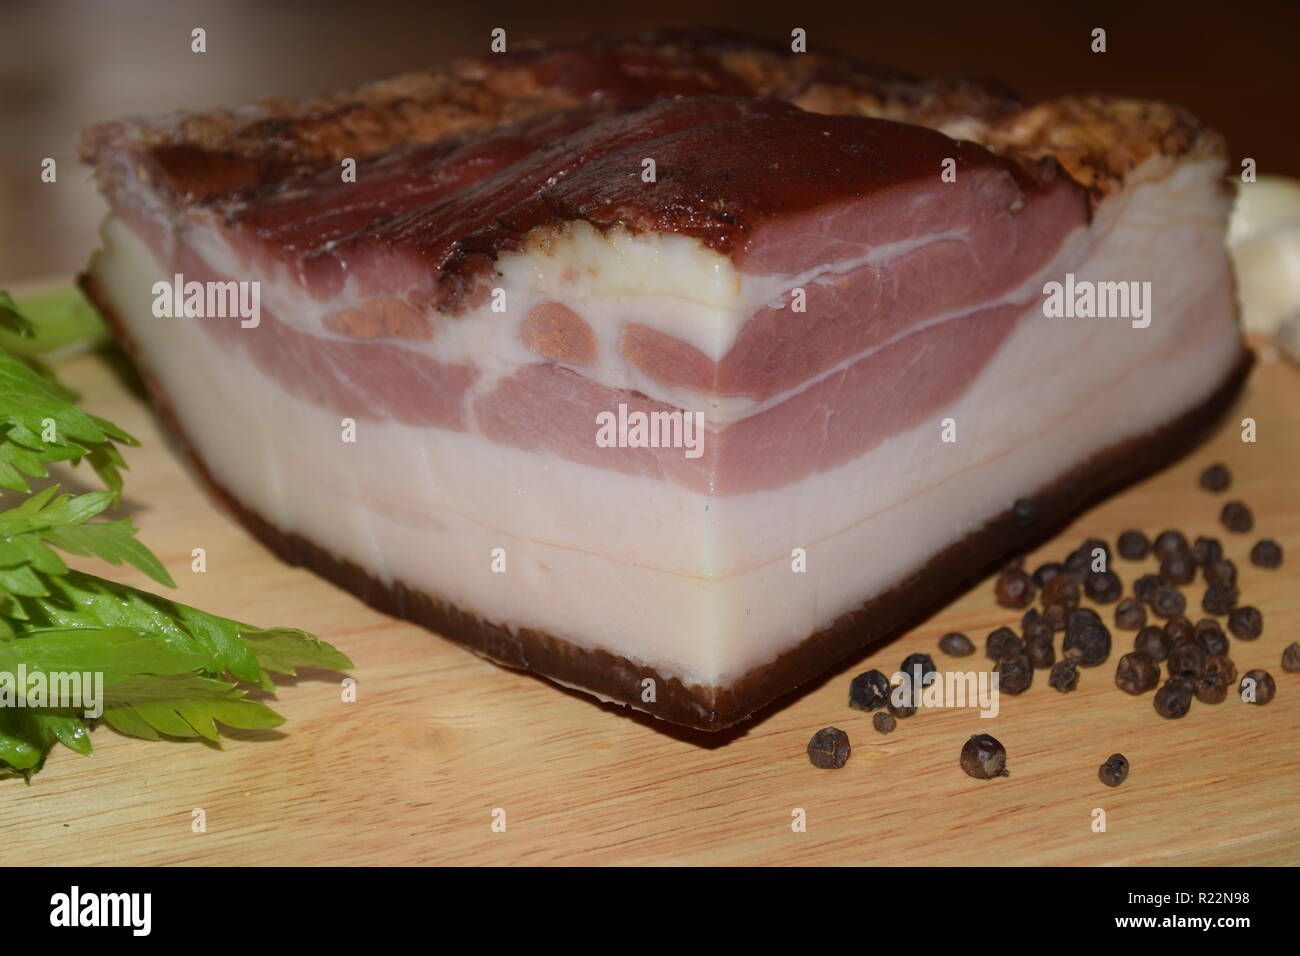 Tutta la fama di 'Smoked Bacon' Tedesco - Cibo, completamente indurito e affumicato di pancetta di maiale sul piatto di legno secondo la nonna ricetta e tecnica. Foto Stock